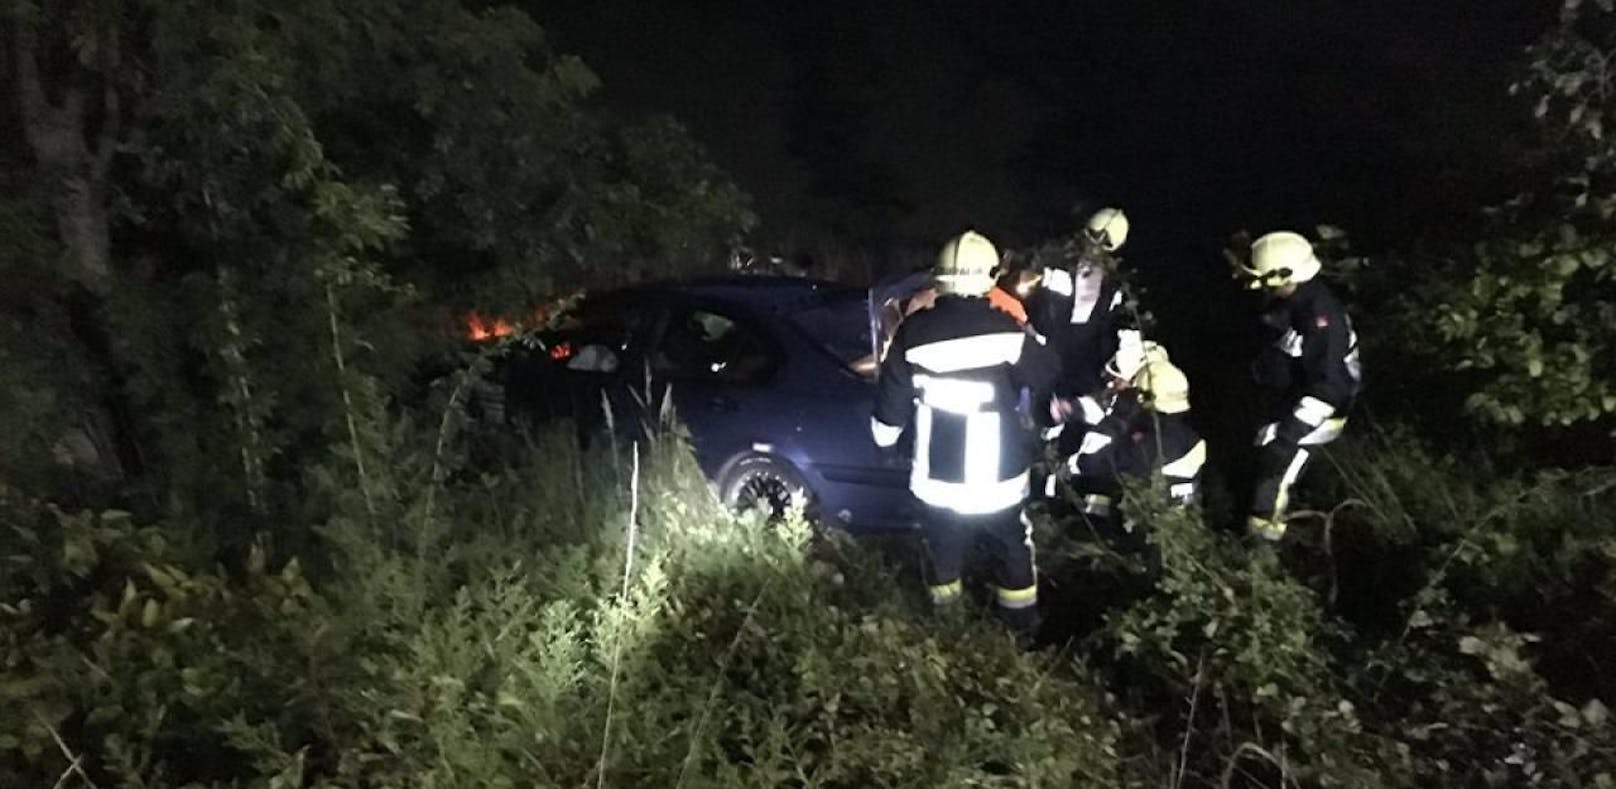 Auto nach Crash mit Lkw im Graben - Lenker verletzt